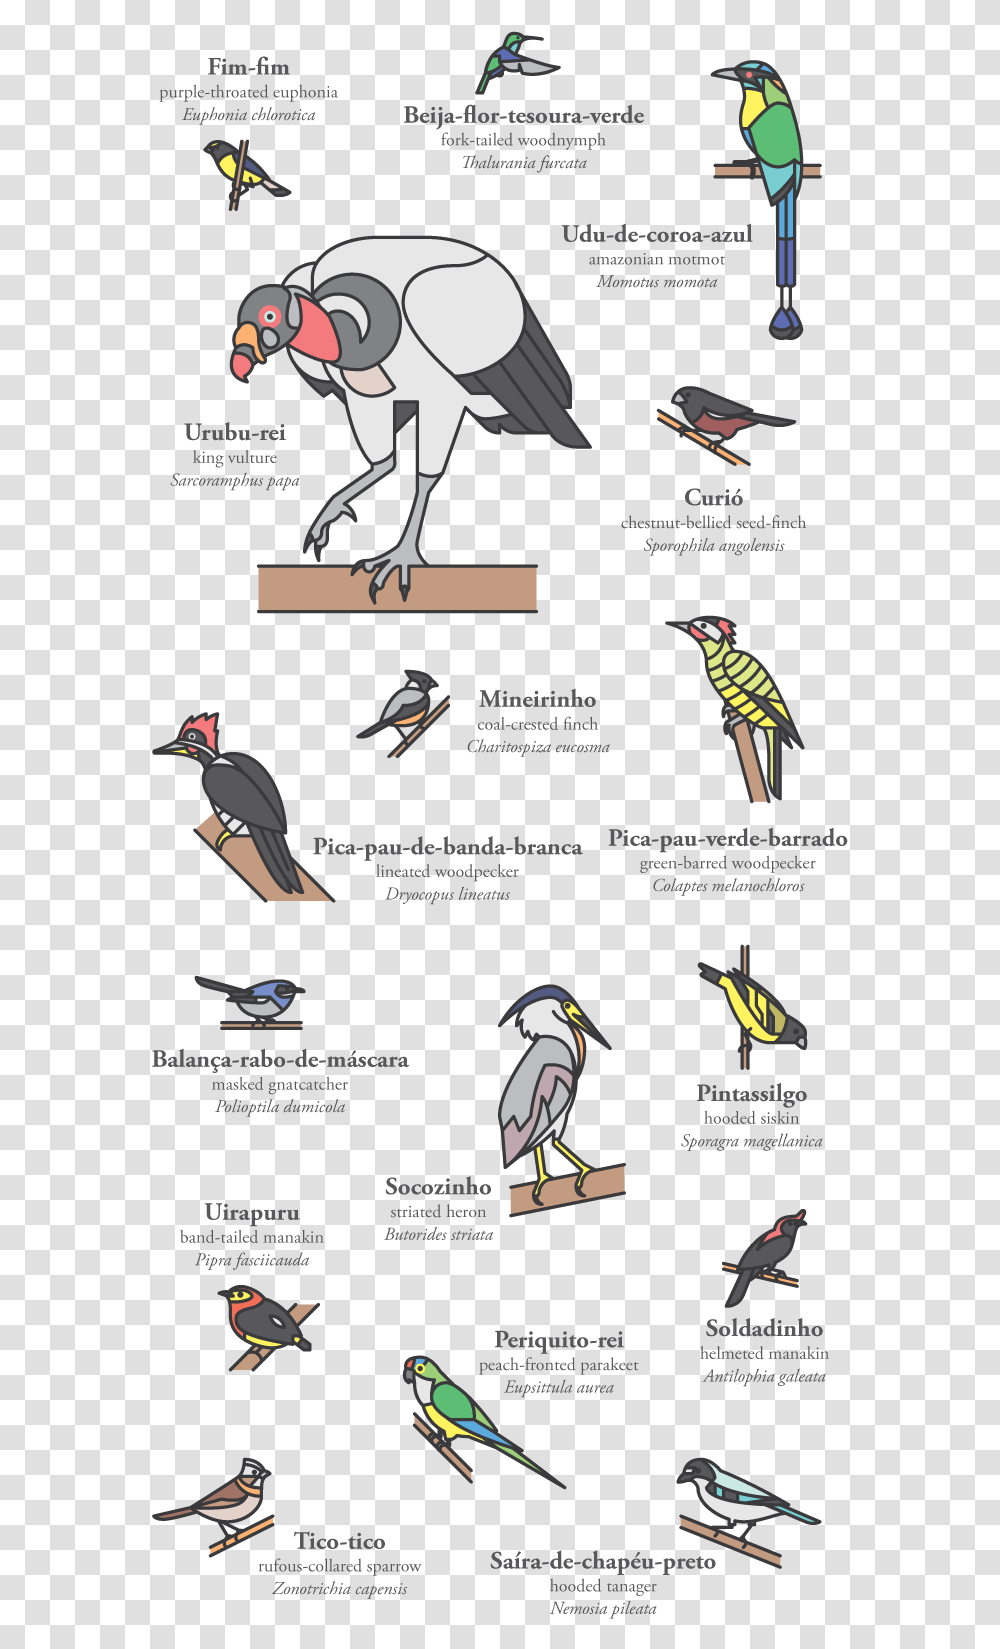 Pedro Machado Cerrado Birds Piciformes, Animal, Text, Outdoors, Nature Transparent Png